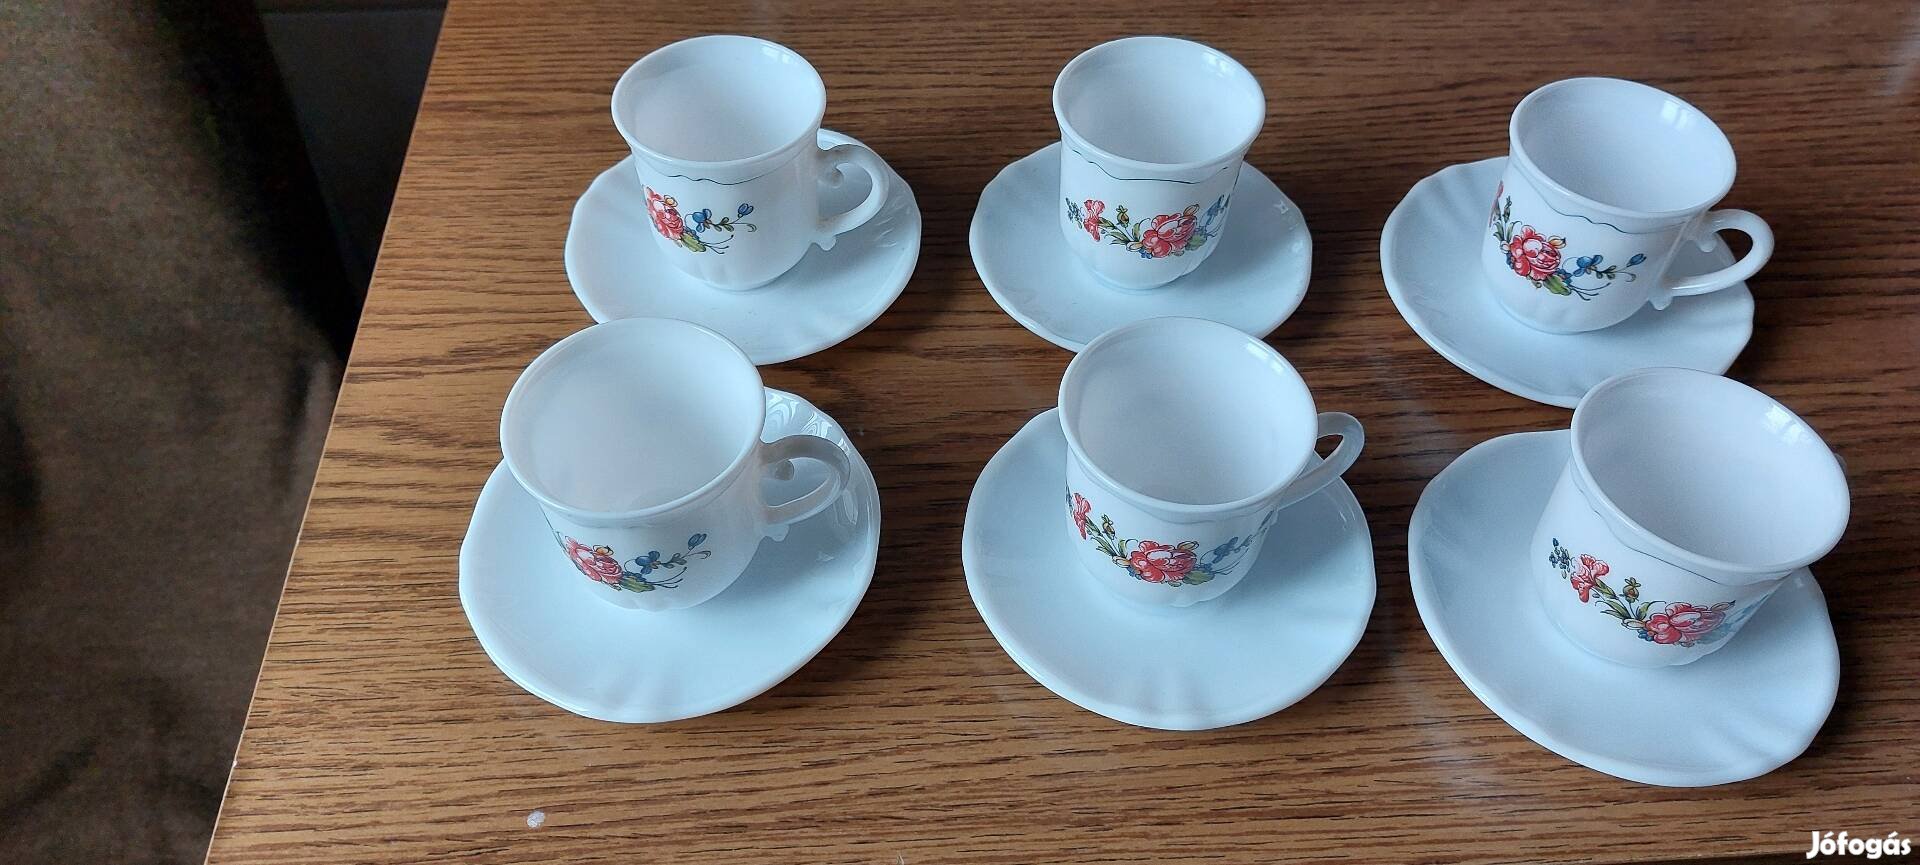 6 db francia porcelan kávéscsésze, tányérral eladó.